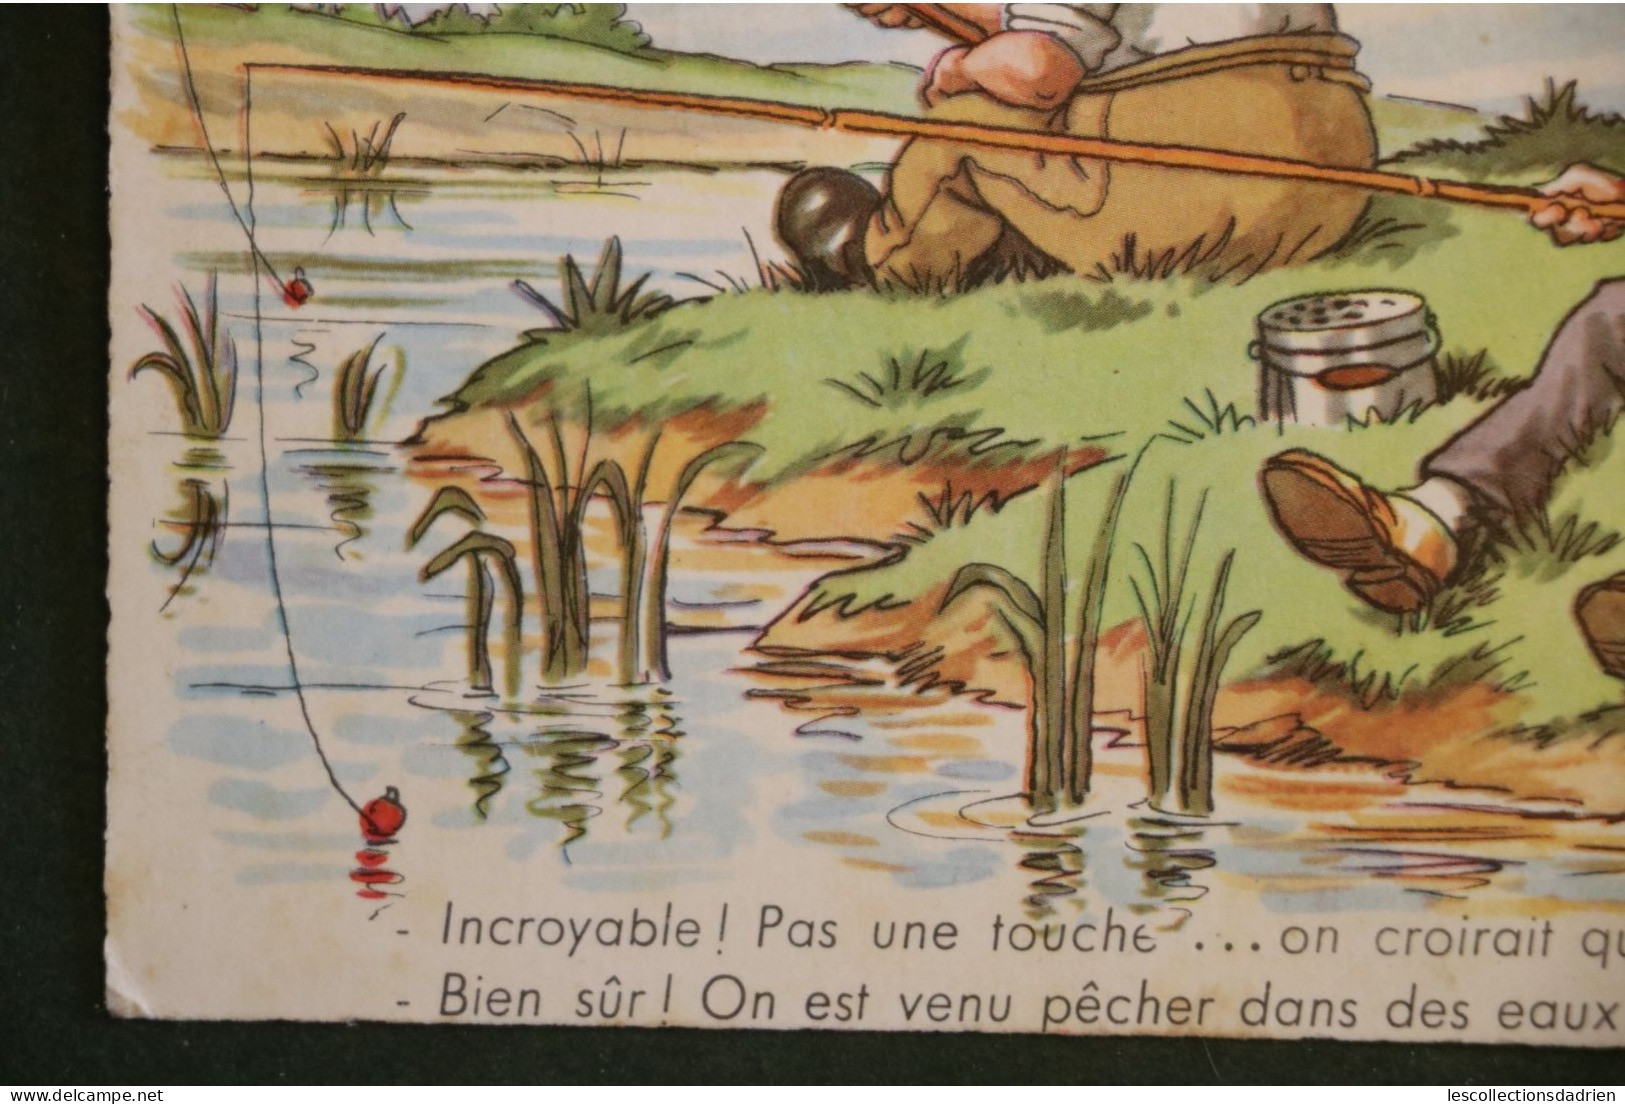 Carte postale humorisitque pêche vissen dessinateur RAP - oblitération ostende Oostende - cachet pub kolen charbon